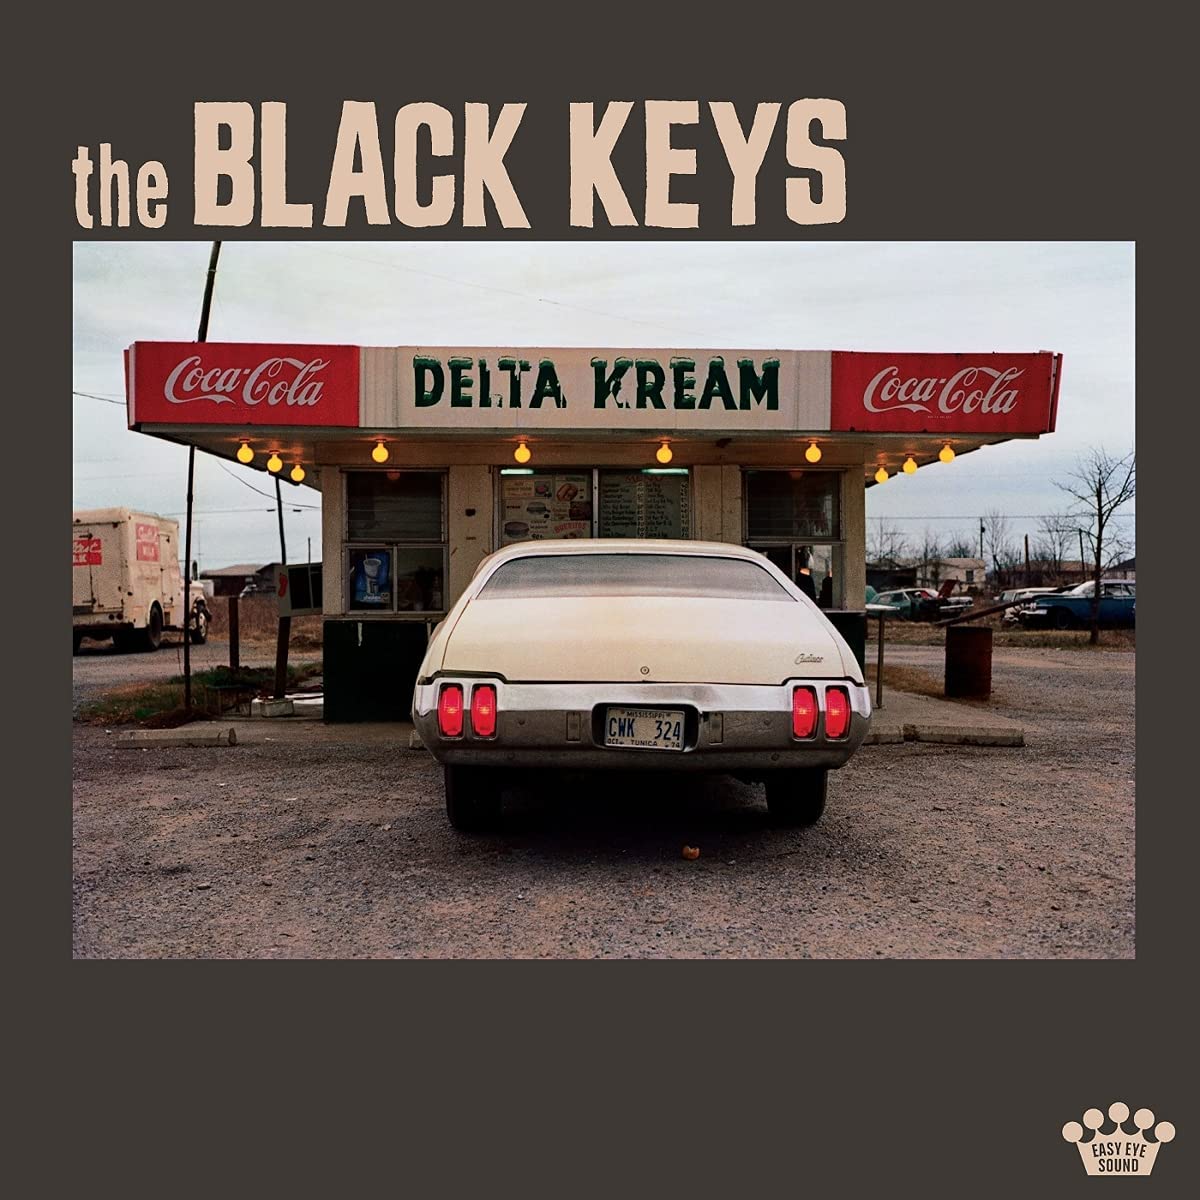 Capa do CD Delta Kream. Apresenta o título da banda The Black Keys acima. Em uma fotografia quadrada, há um carro branco estacionado no centro, em frente a uma loja chamada Delta Kream, que possui dois símbolos da Coca-Cola ao lado do nome. O chão é de terra batida.